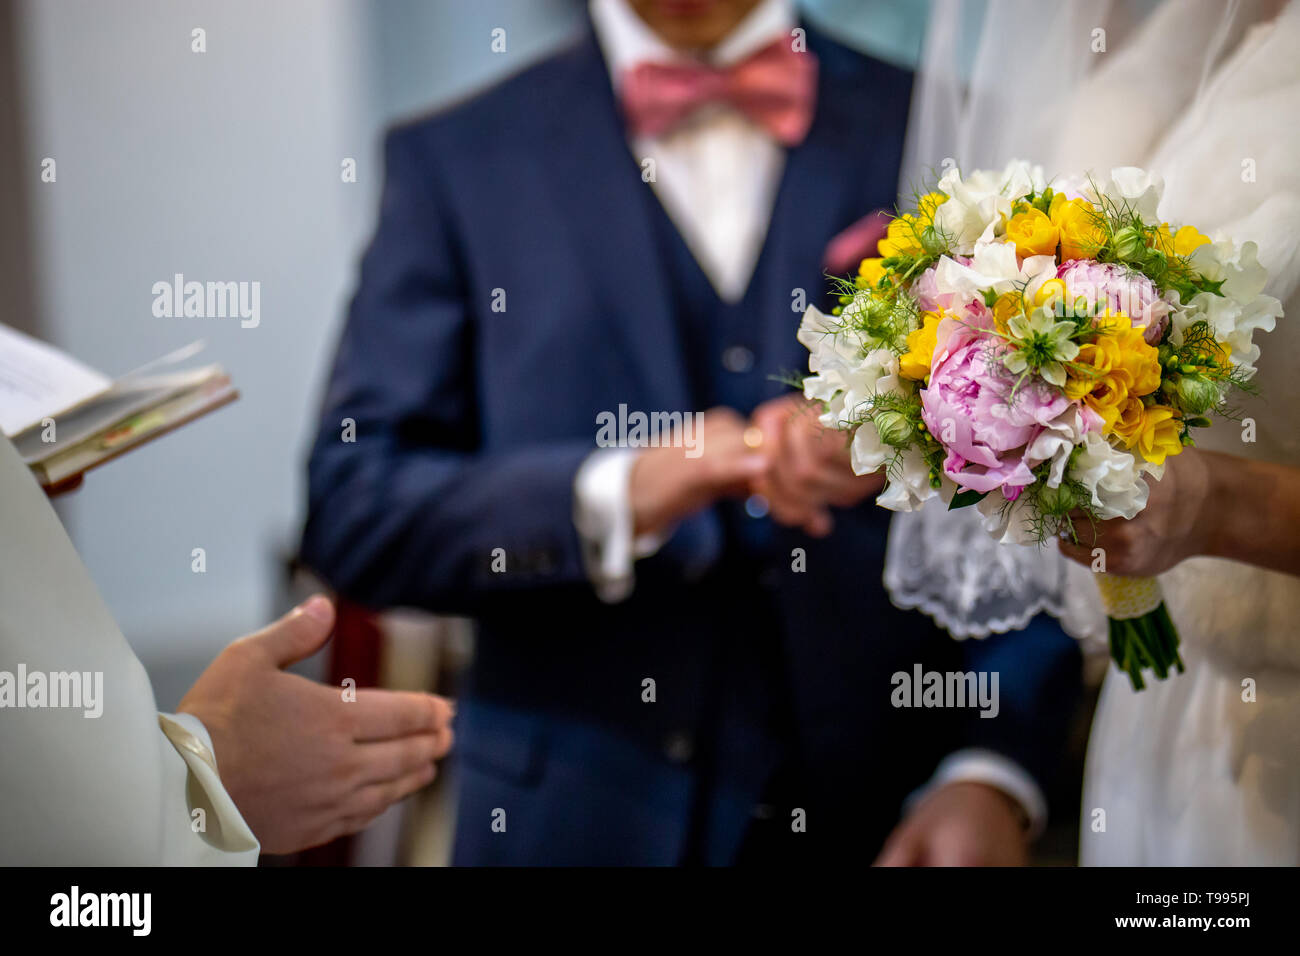 La sposa detiene un matrimonio bouquet di fiori nella sua mano. Il bouquet è composto di bianco, giallo e fiori di colore rosa. Sacerdote canto e lo sposo è I Foto Stock